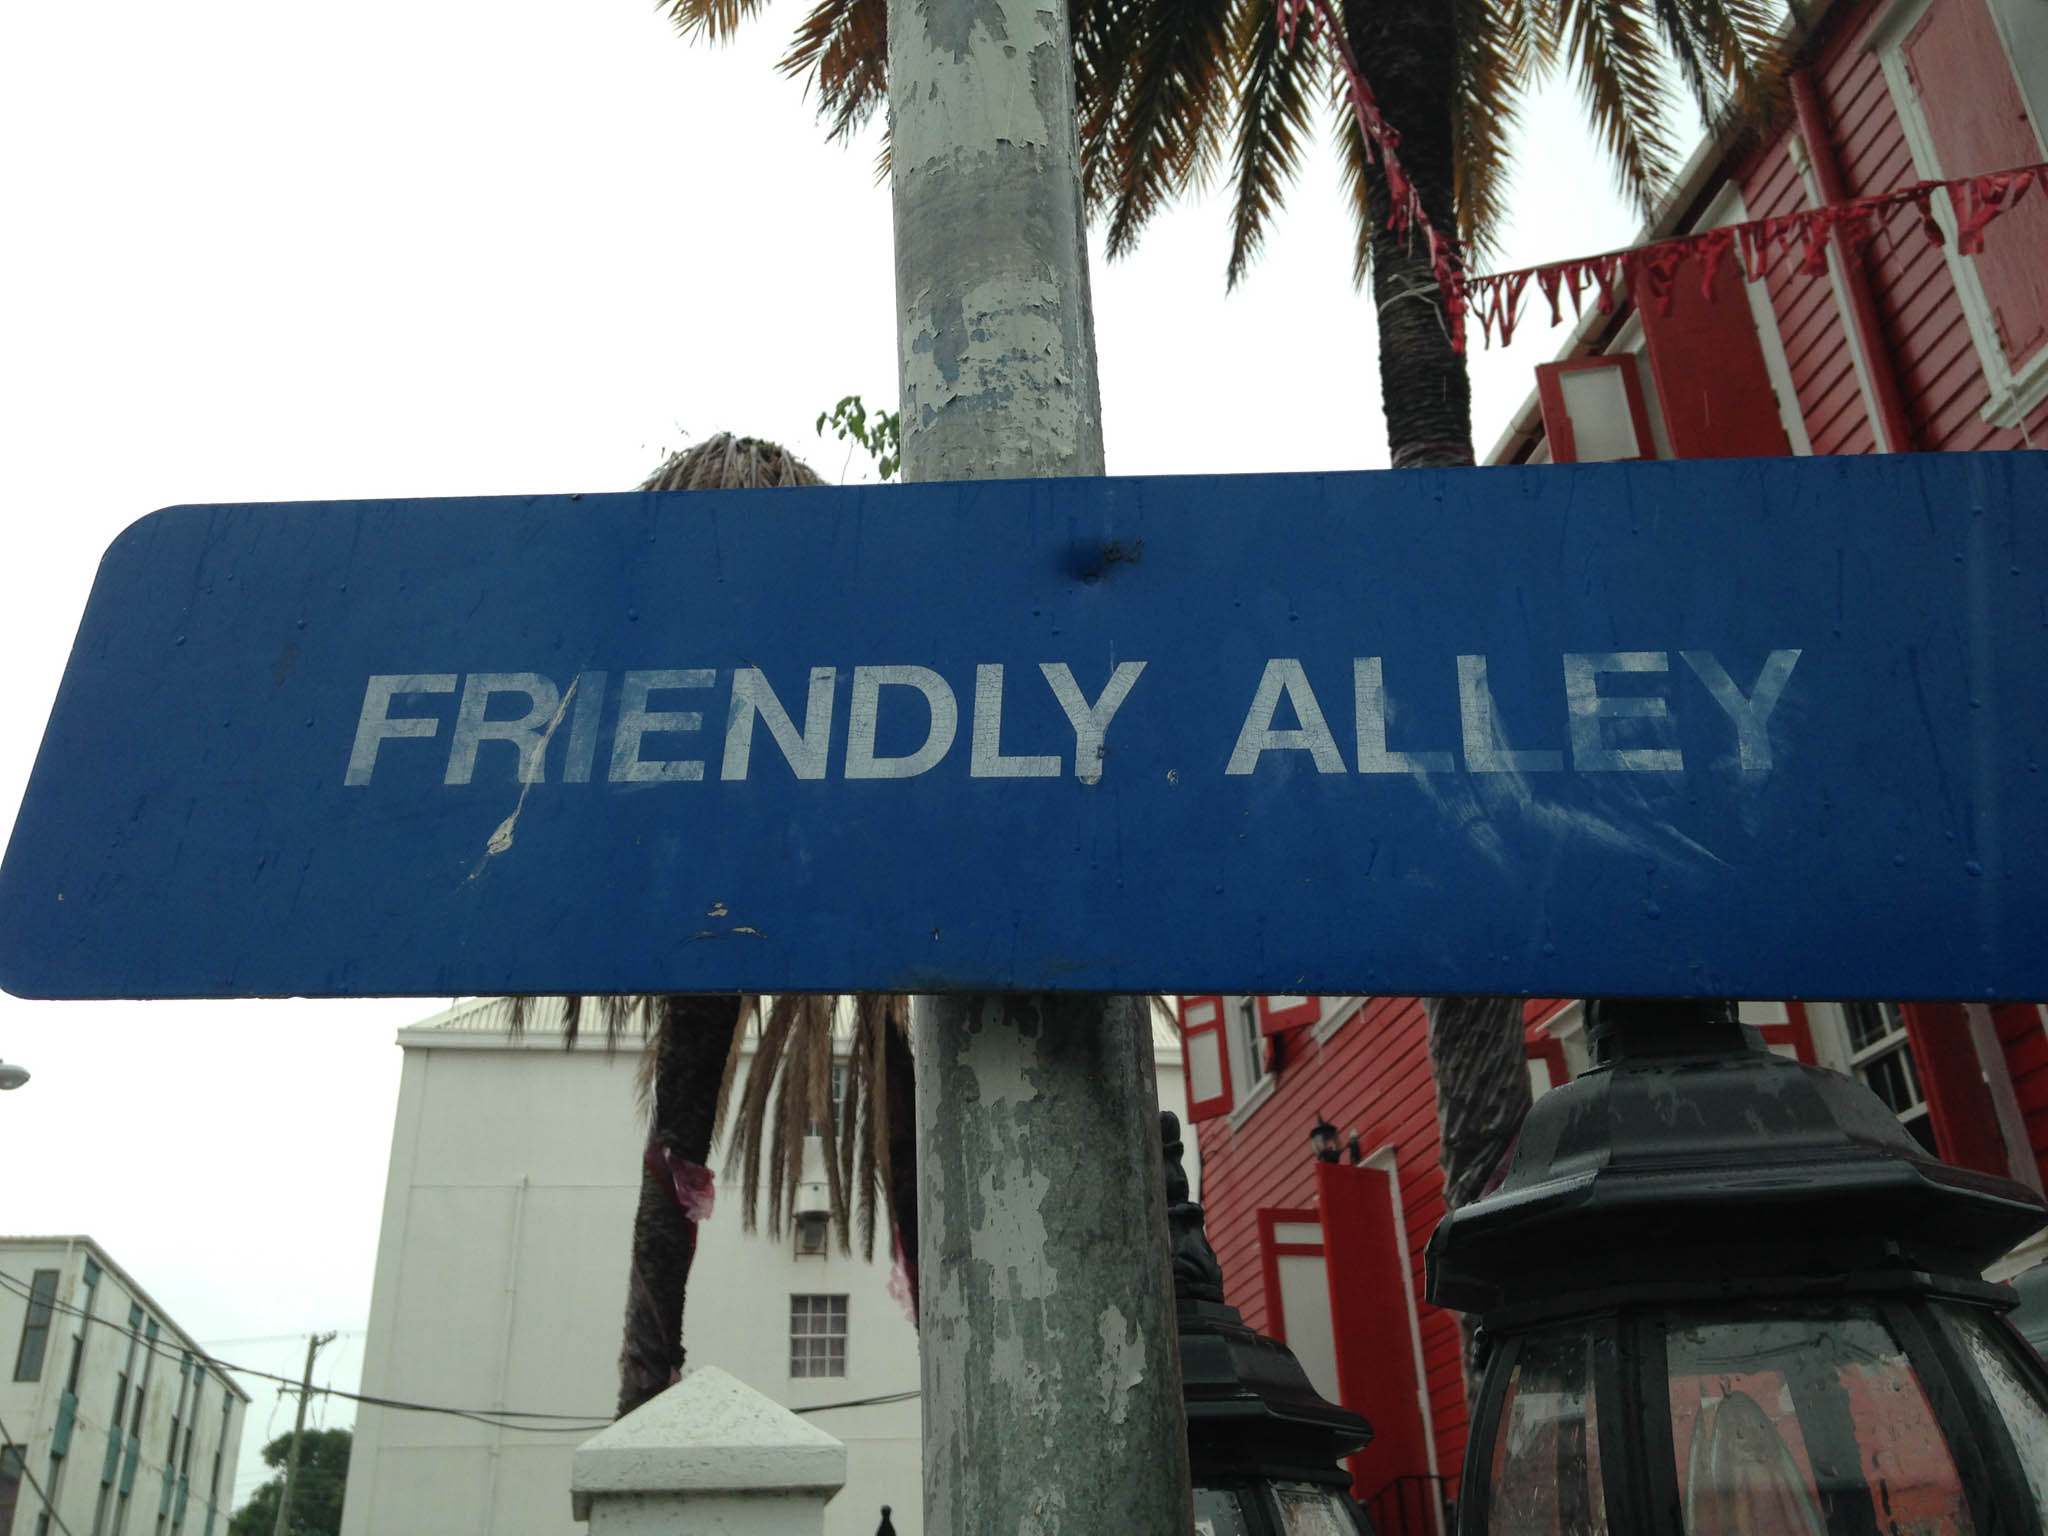 Giving Alleys a Good Name